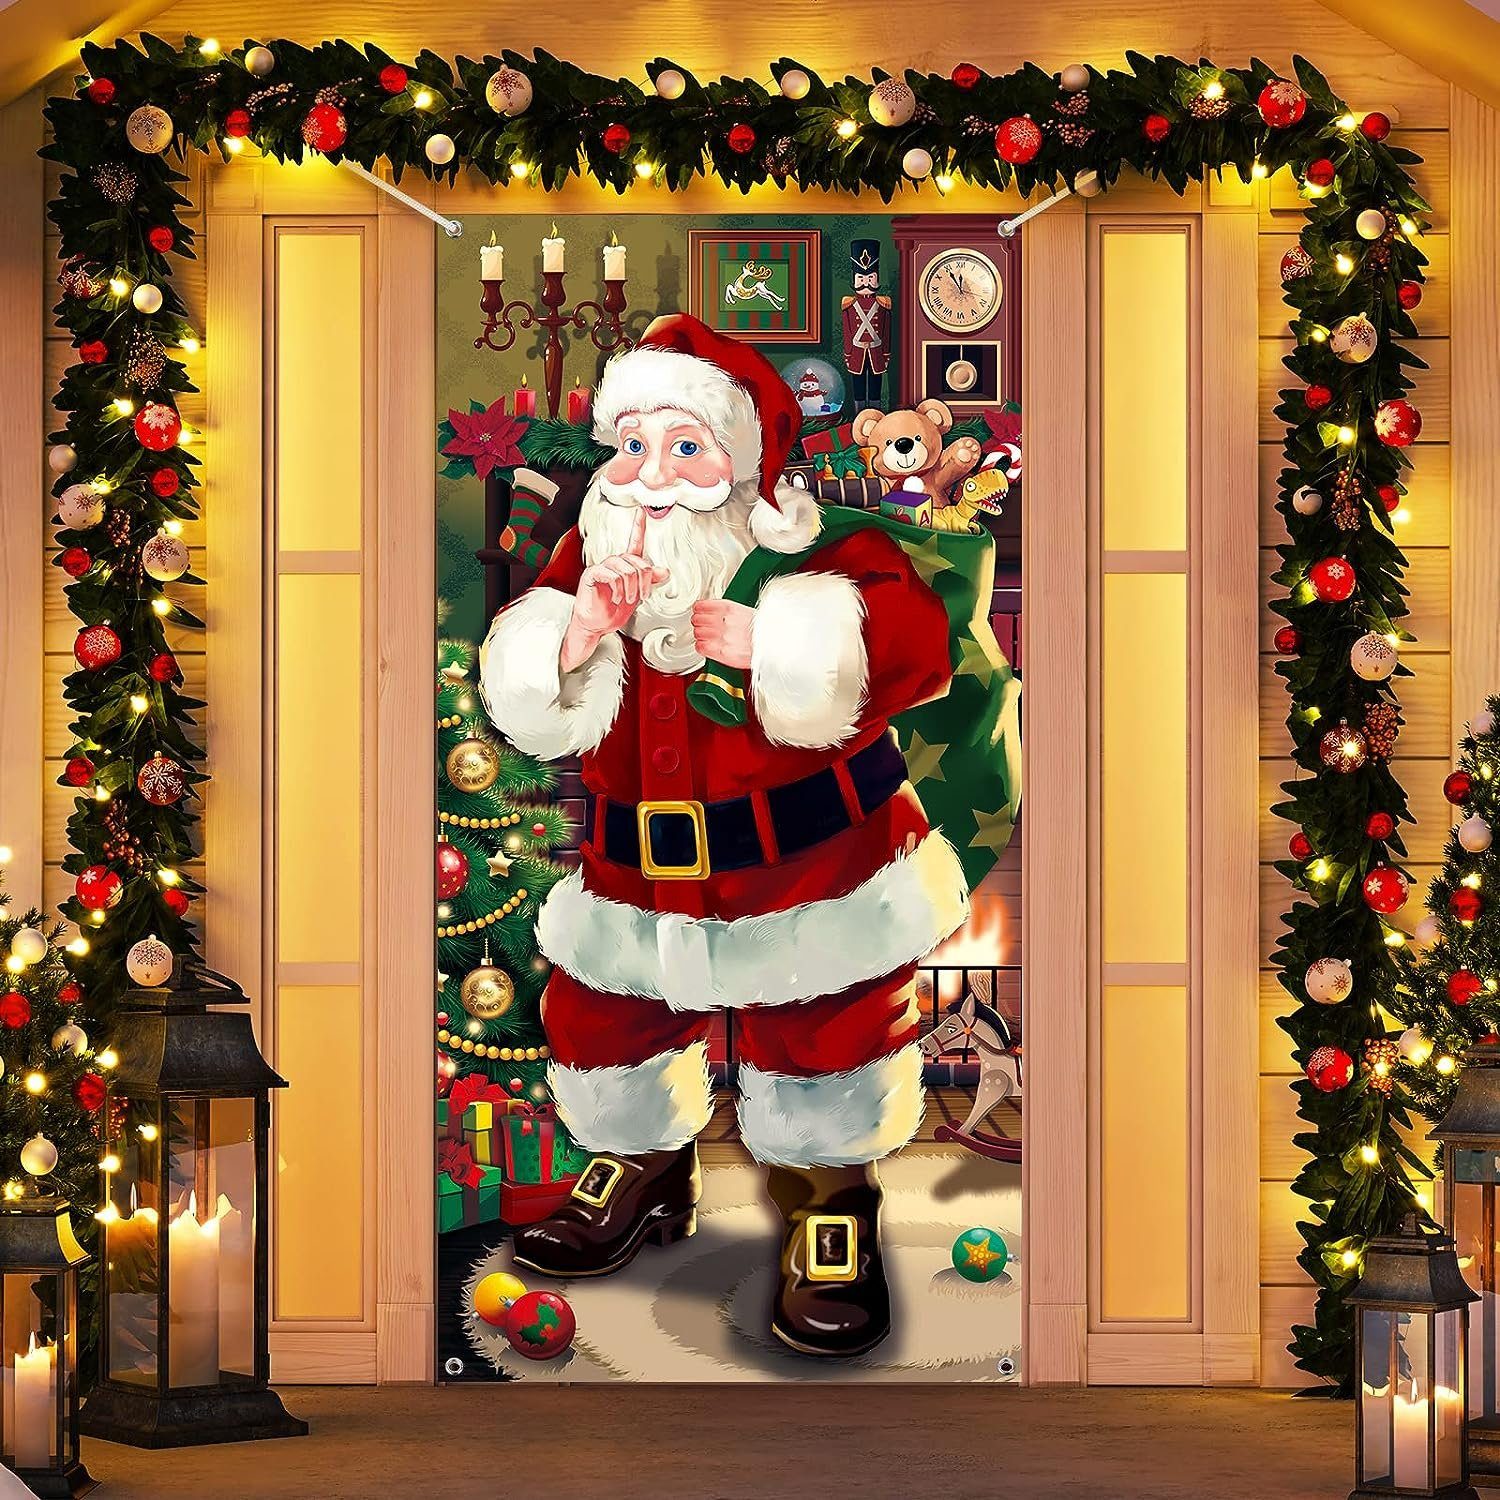 WaKuKa Hängedekoration Weihnachts-Türdekoration, Weihnachtsbanner zum  Aufhängen an der Tür (1 St), Ideal für Weihnachtsfeiern und  Fotografie-Requisiten